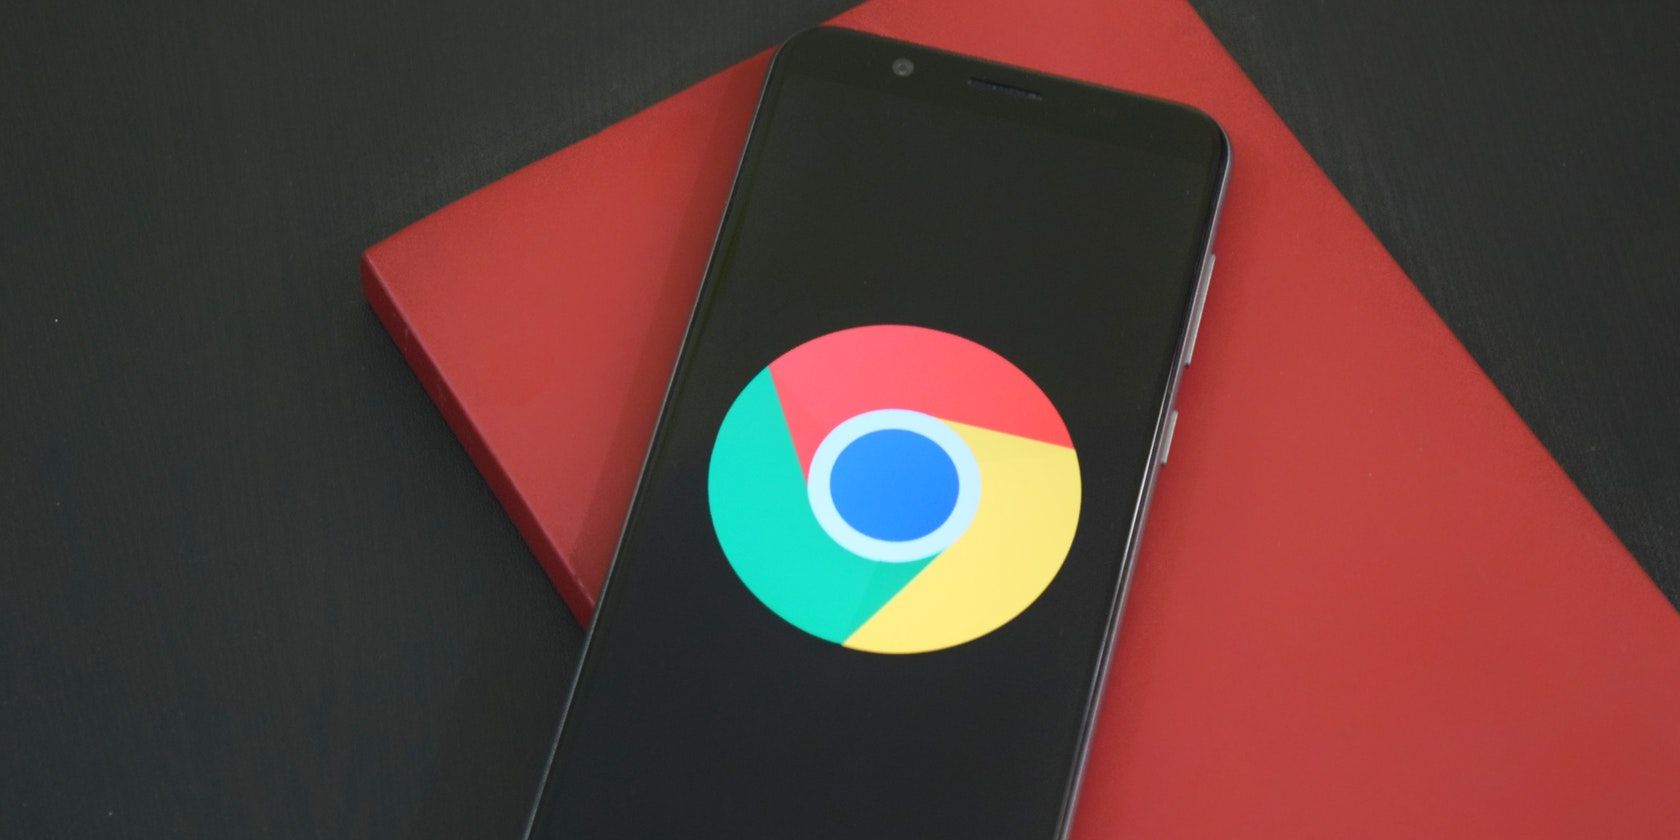 Phone with a Chrome logo.